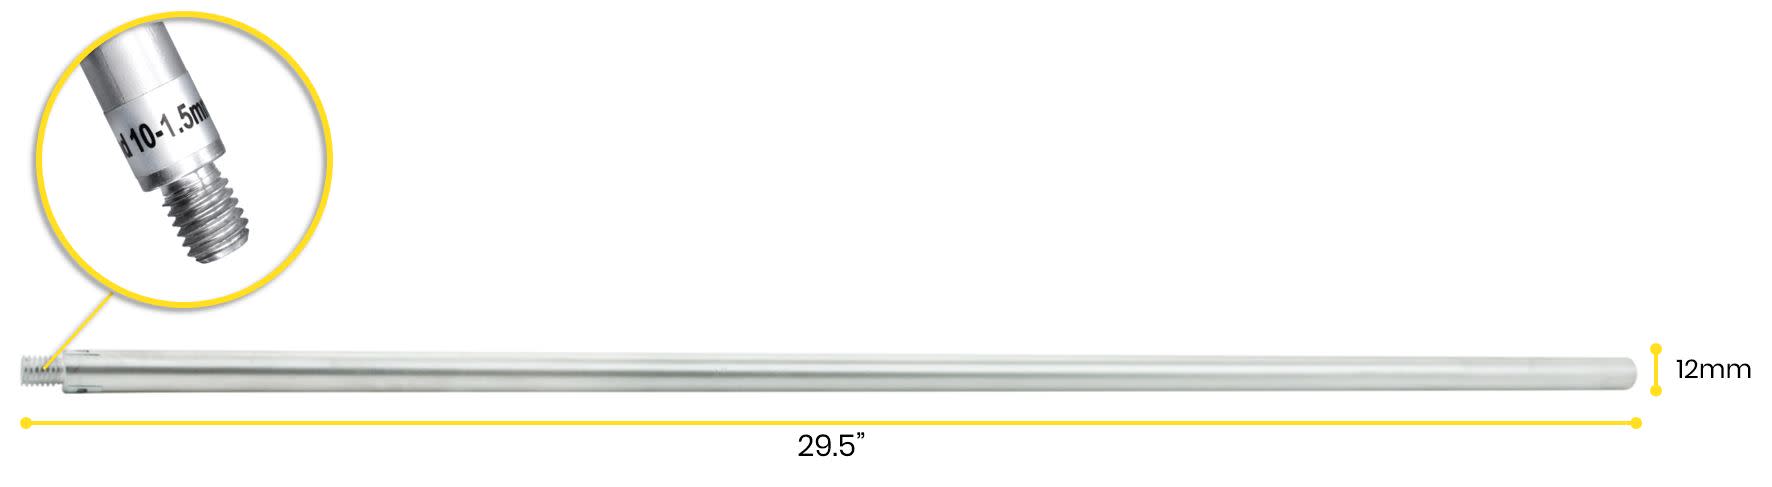 Retort Stand Rod, 29.5" (75cm) - Aluminum - 10 x 1.5mm Thread